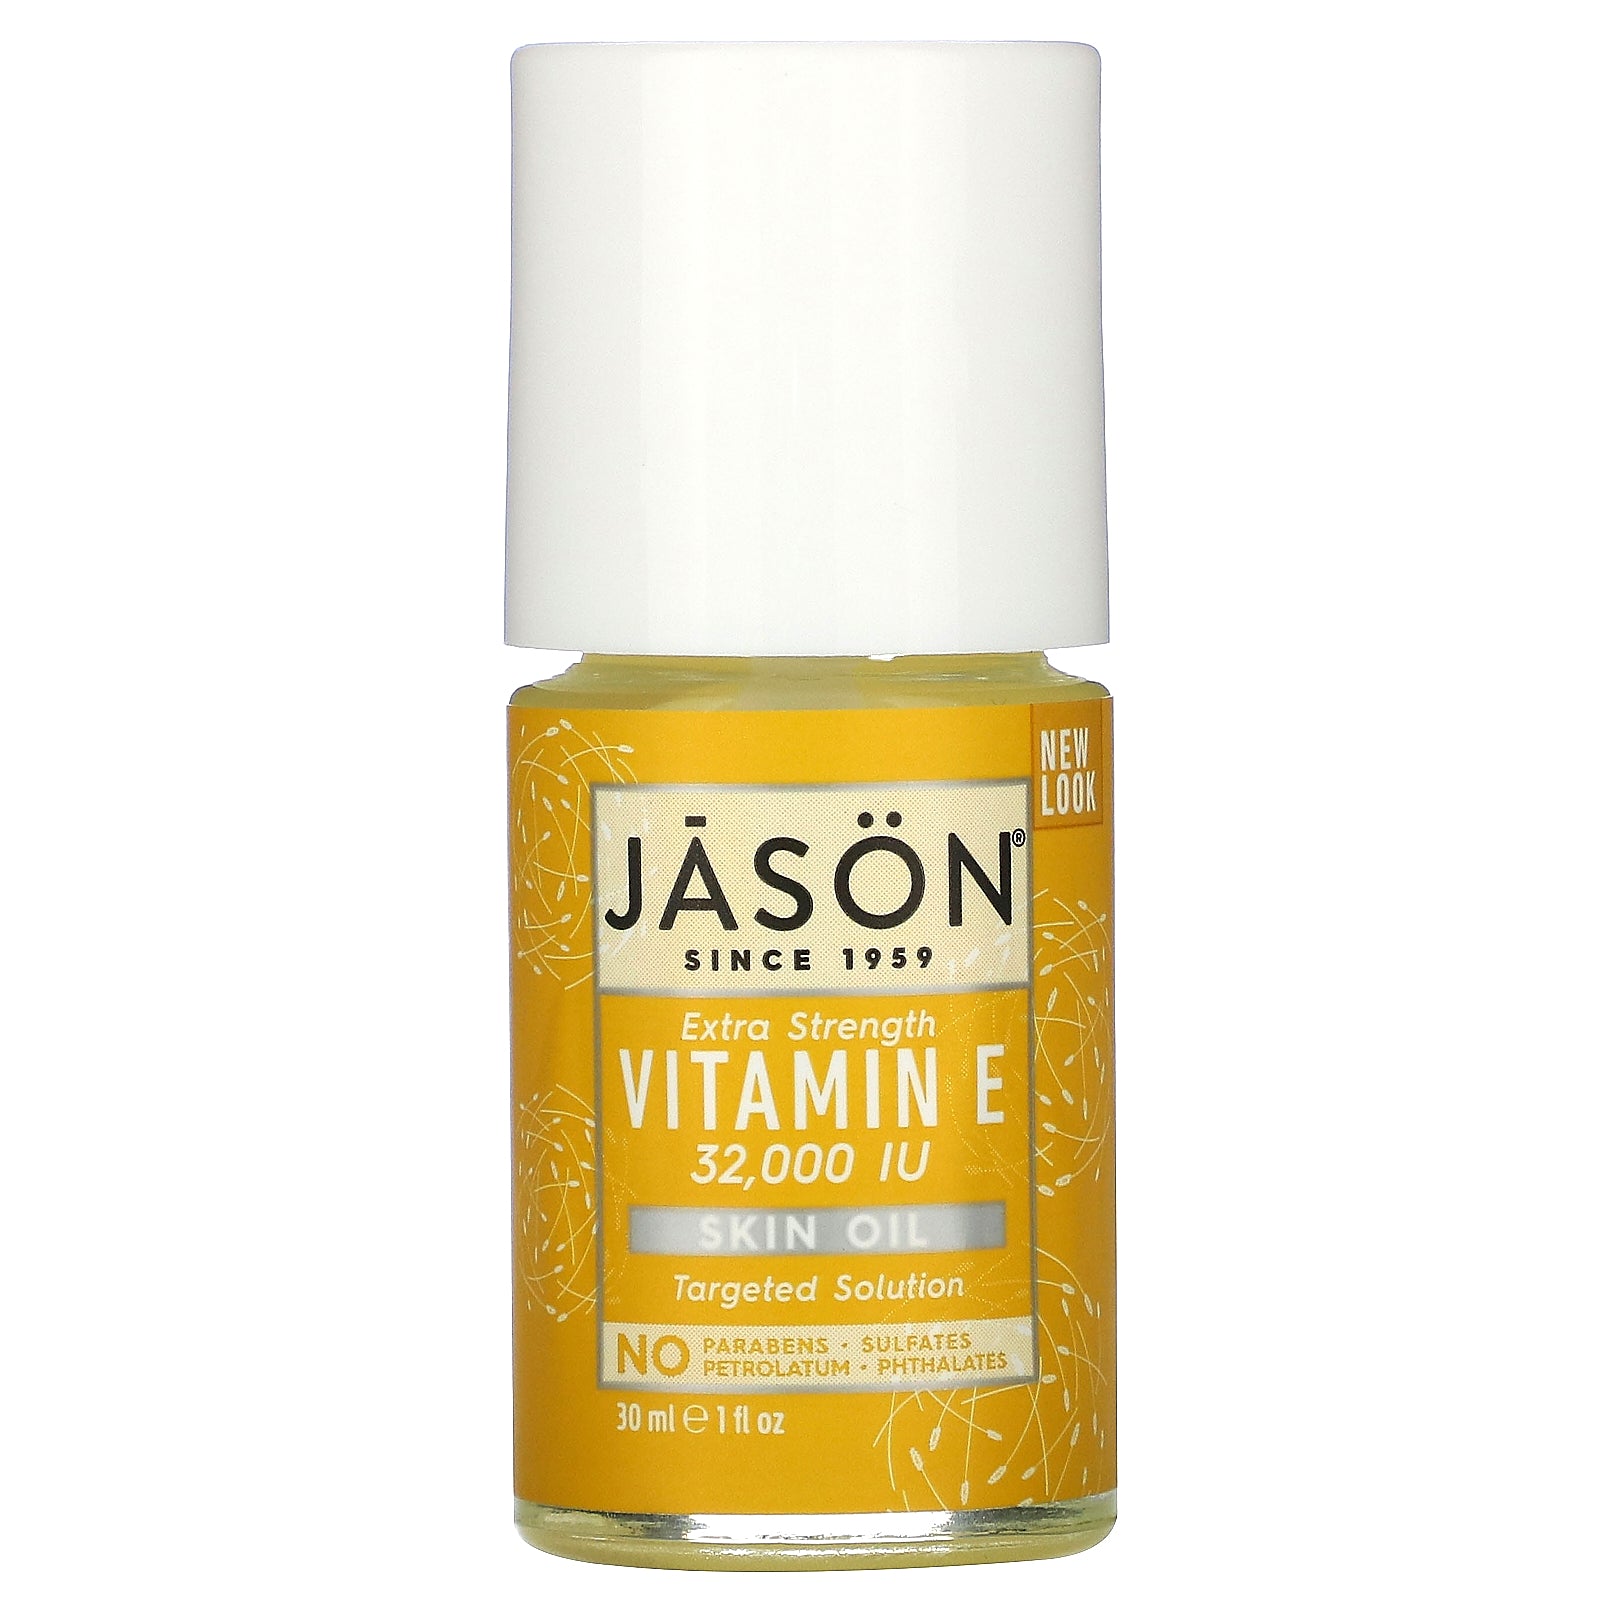 Jason Natural, Extra Strength, Vitamin E Skin Oil, 32,000 I.U., 1 fl oz (30 ml)